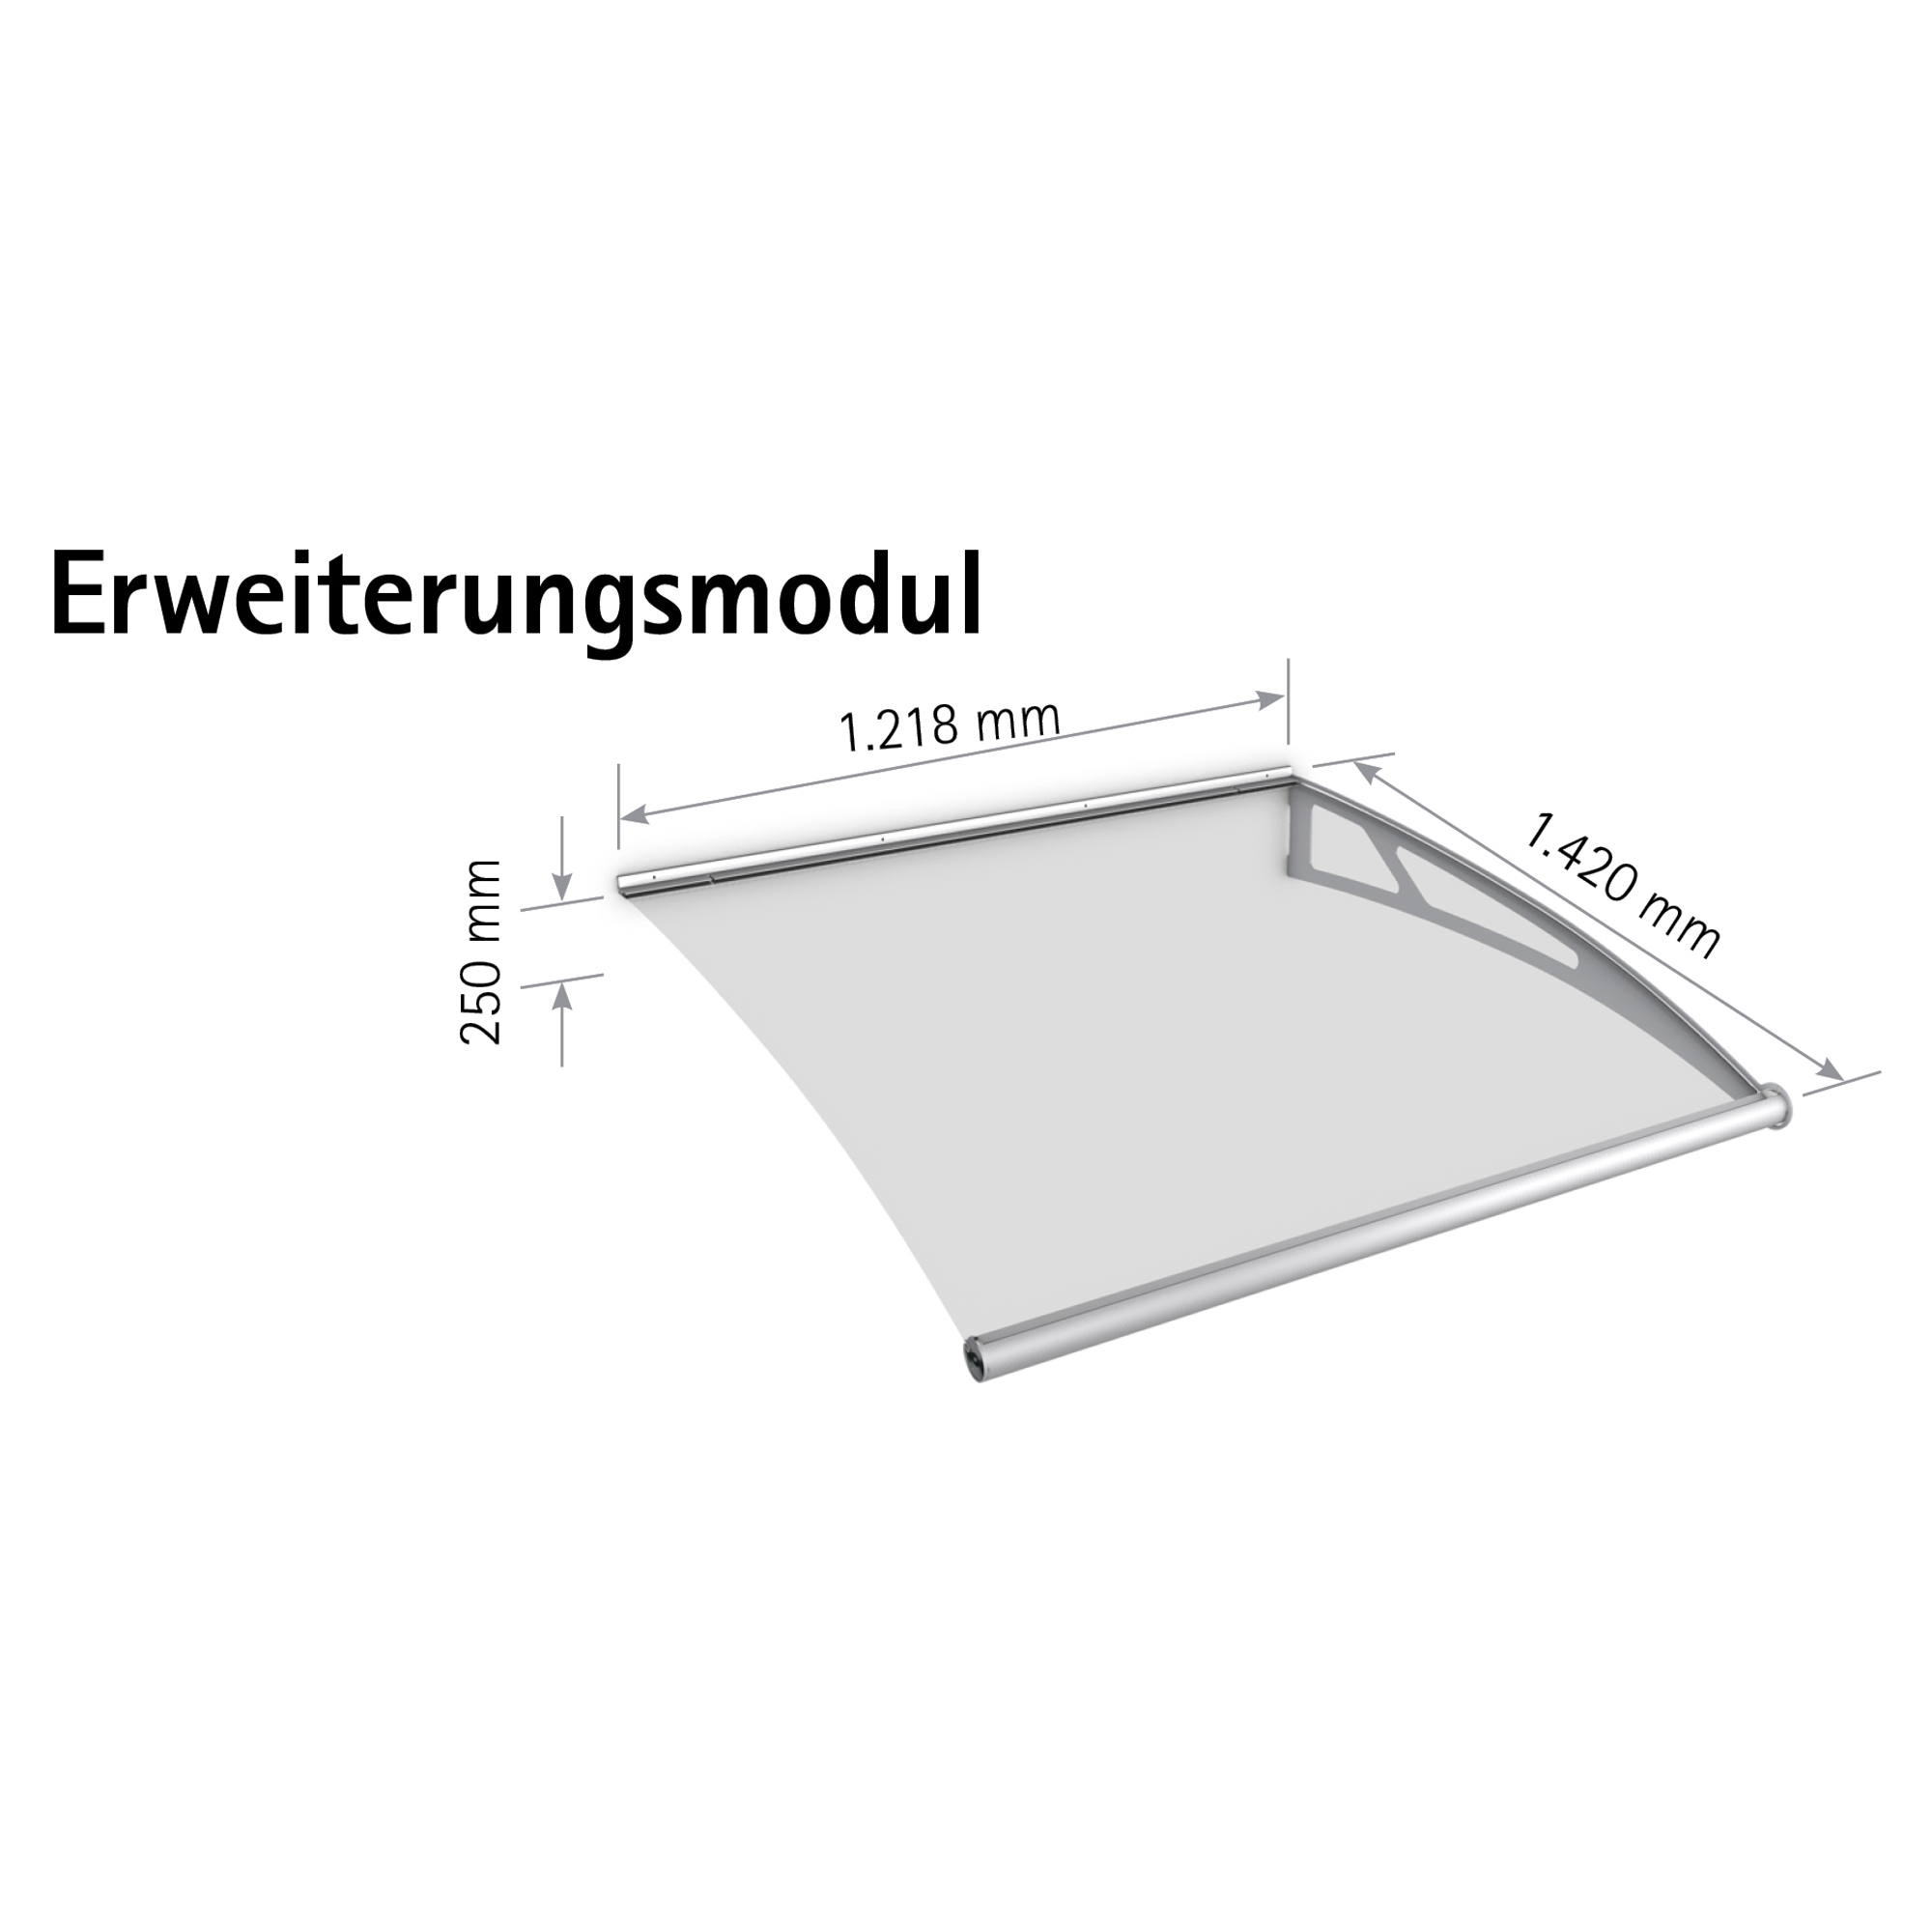 Pultbogen-Vordach "LT-Line" Erweiterungsmodul Edelstahl/Acrylglas satiniert 122 x 142 cm + product picture